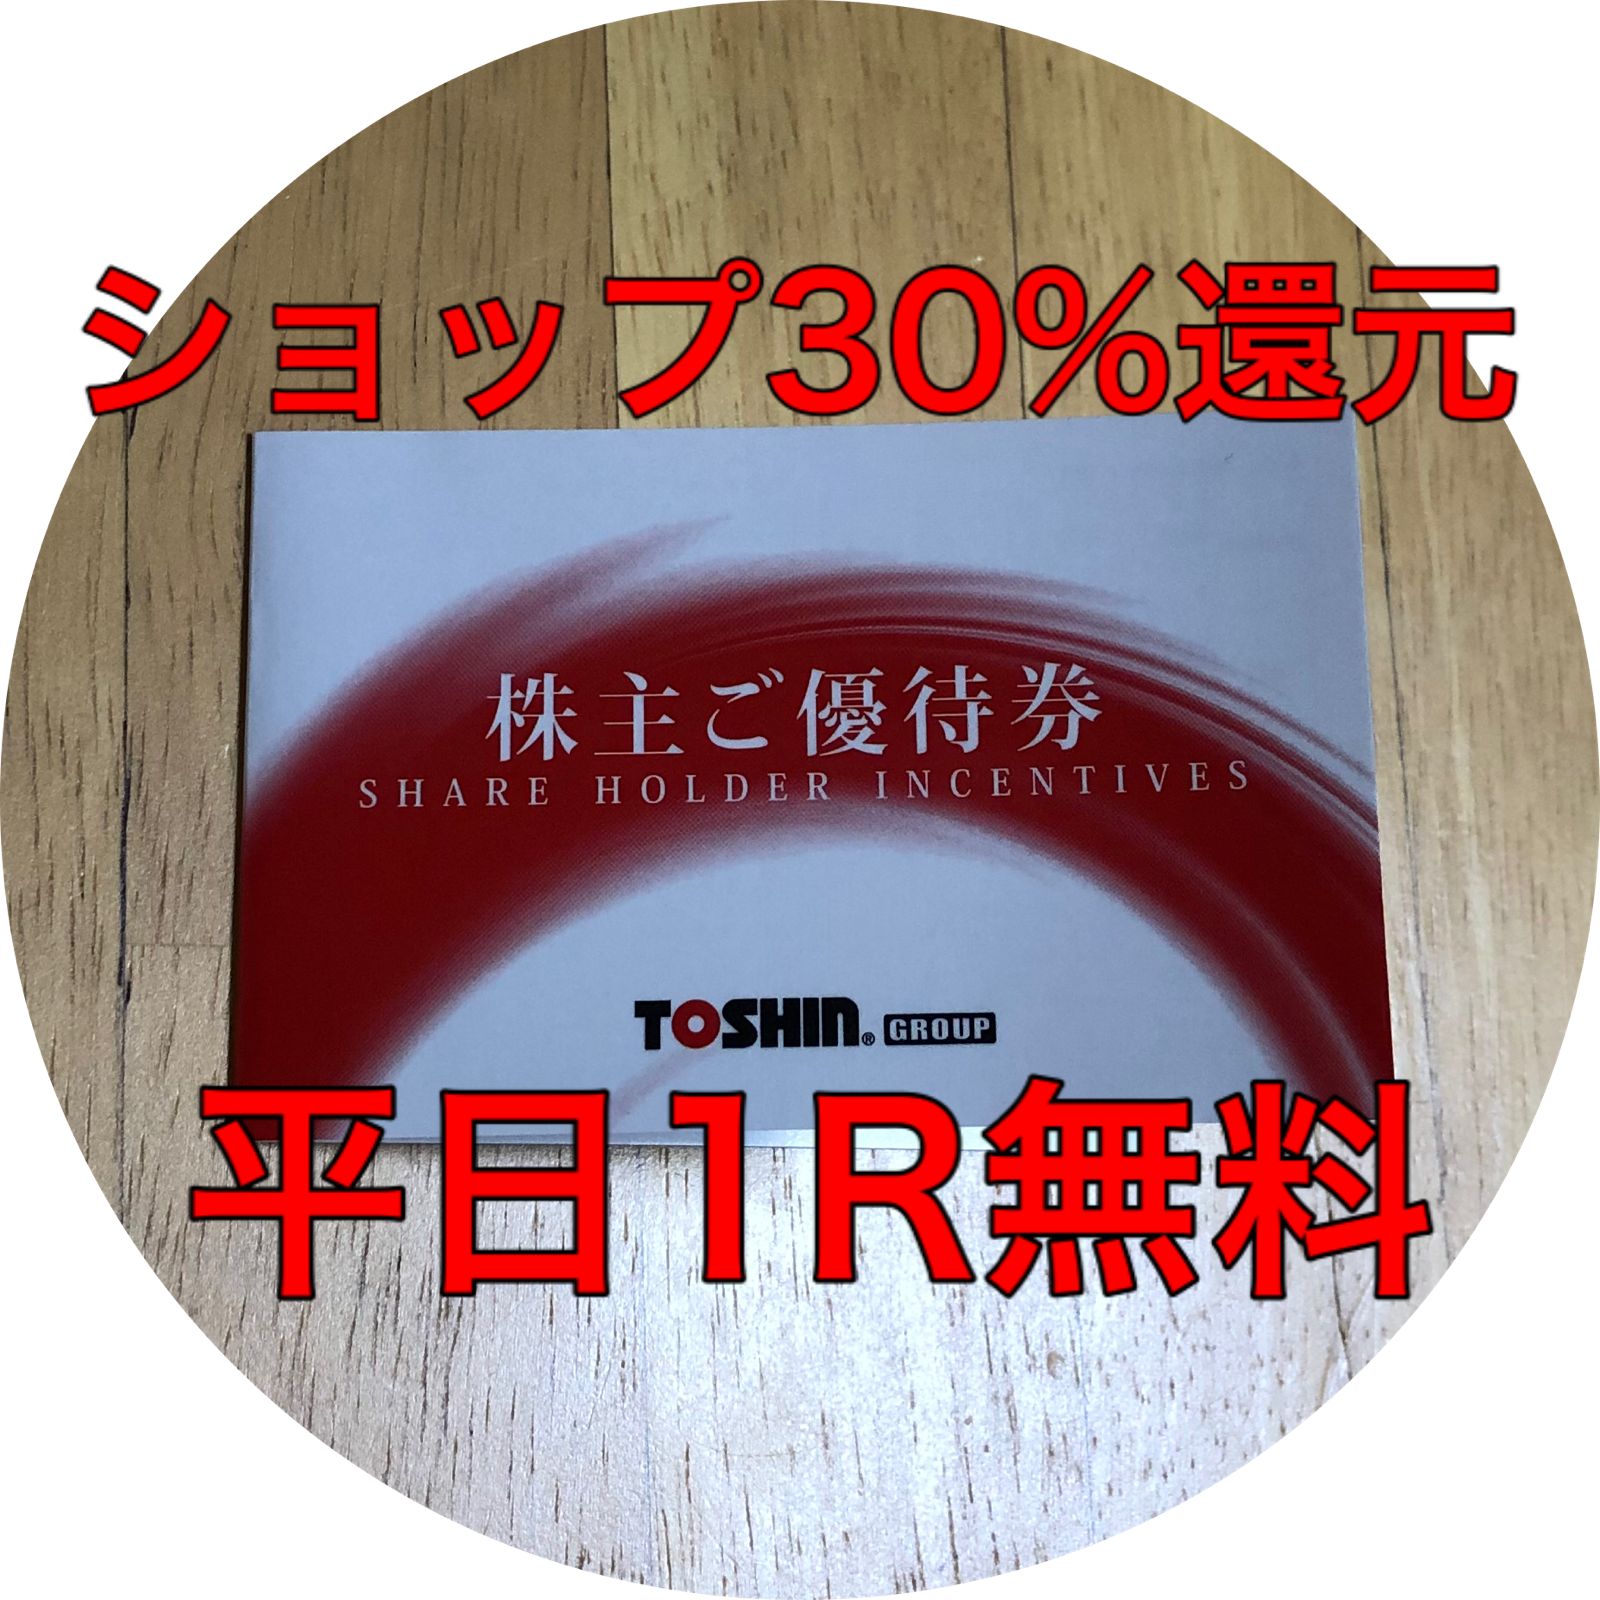 トーシン 株主優待券 平日1R無料 - さすけショップ - メルカリ